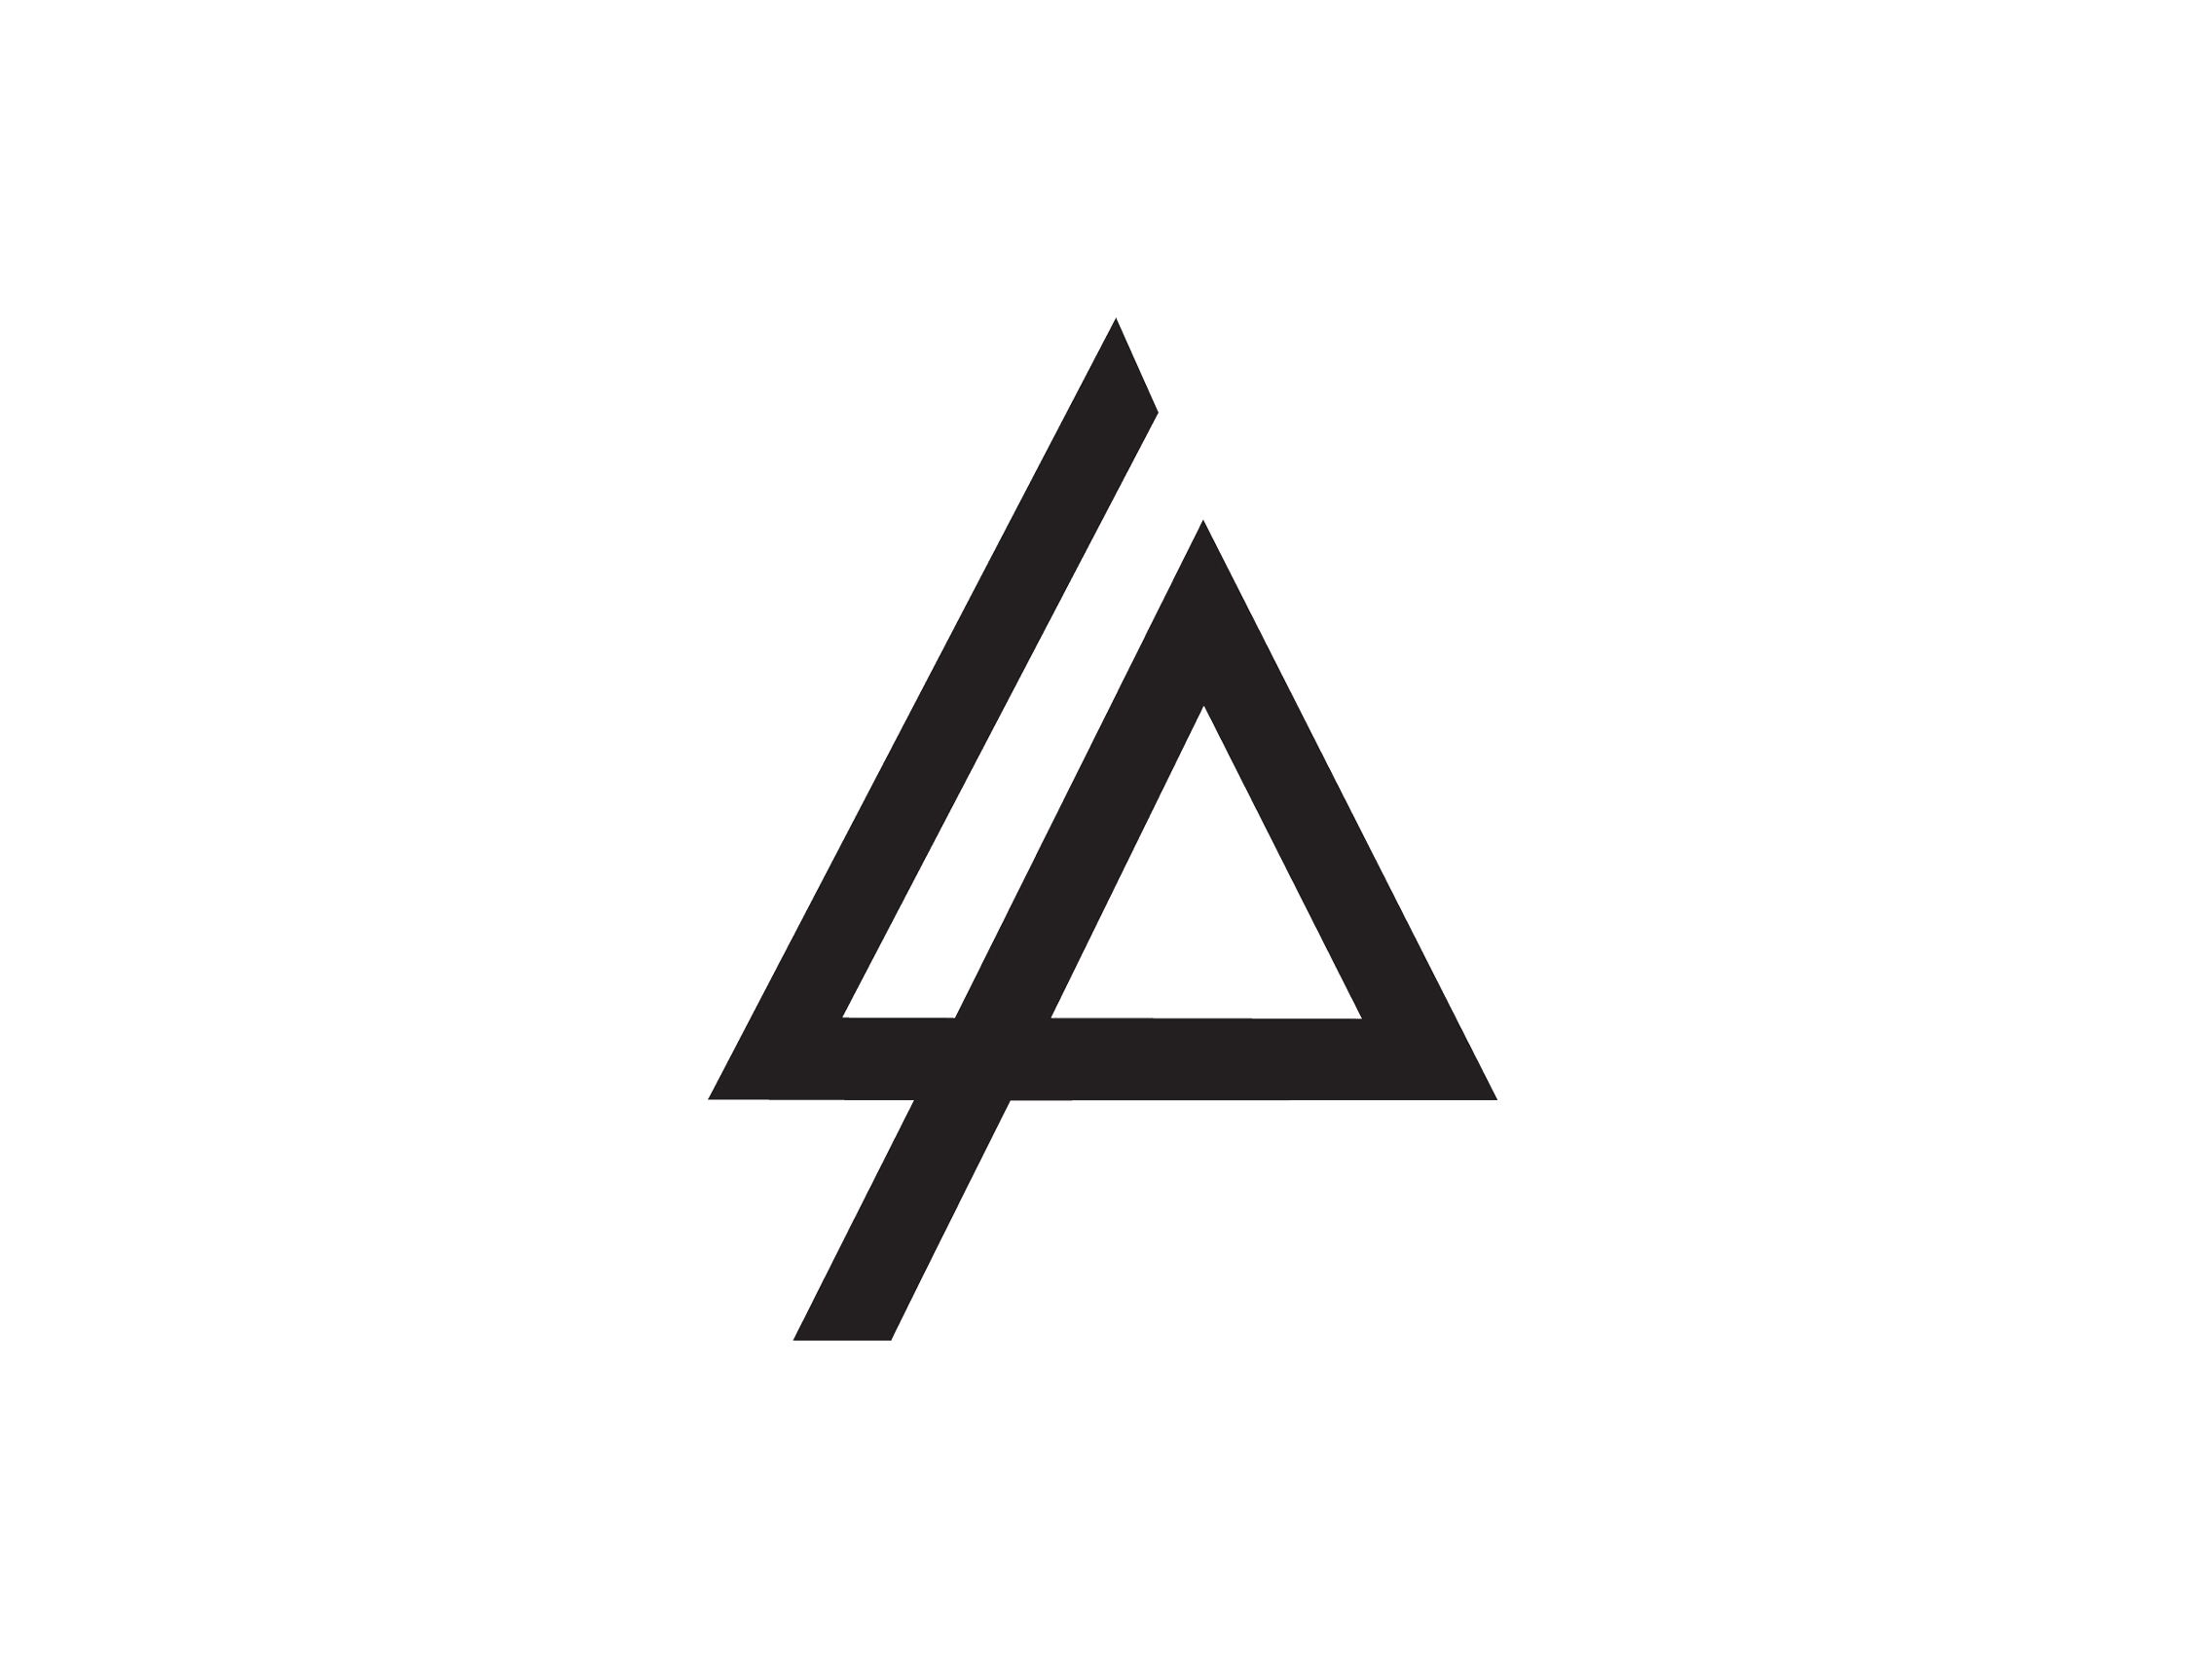 All Triangle Logo - triangle logos - Kleo.wagenaardentistry.com